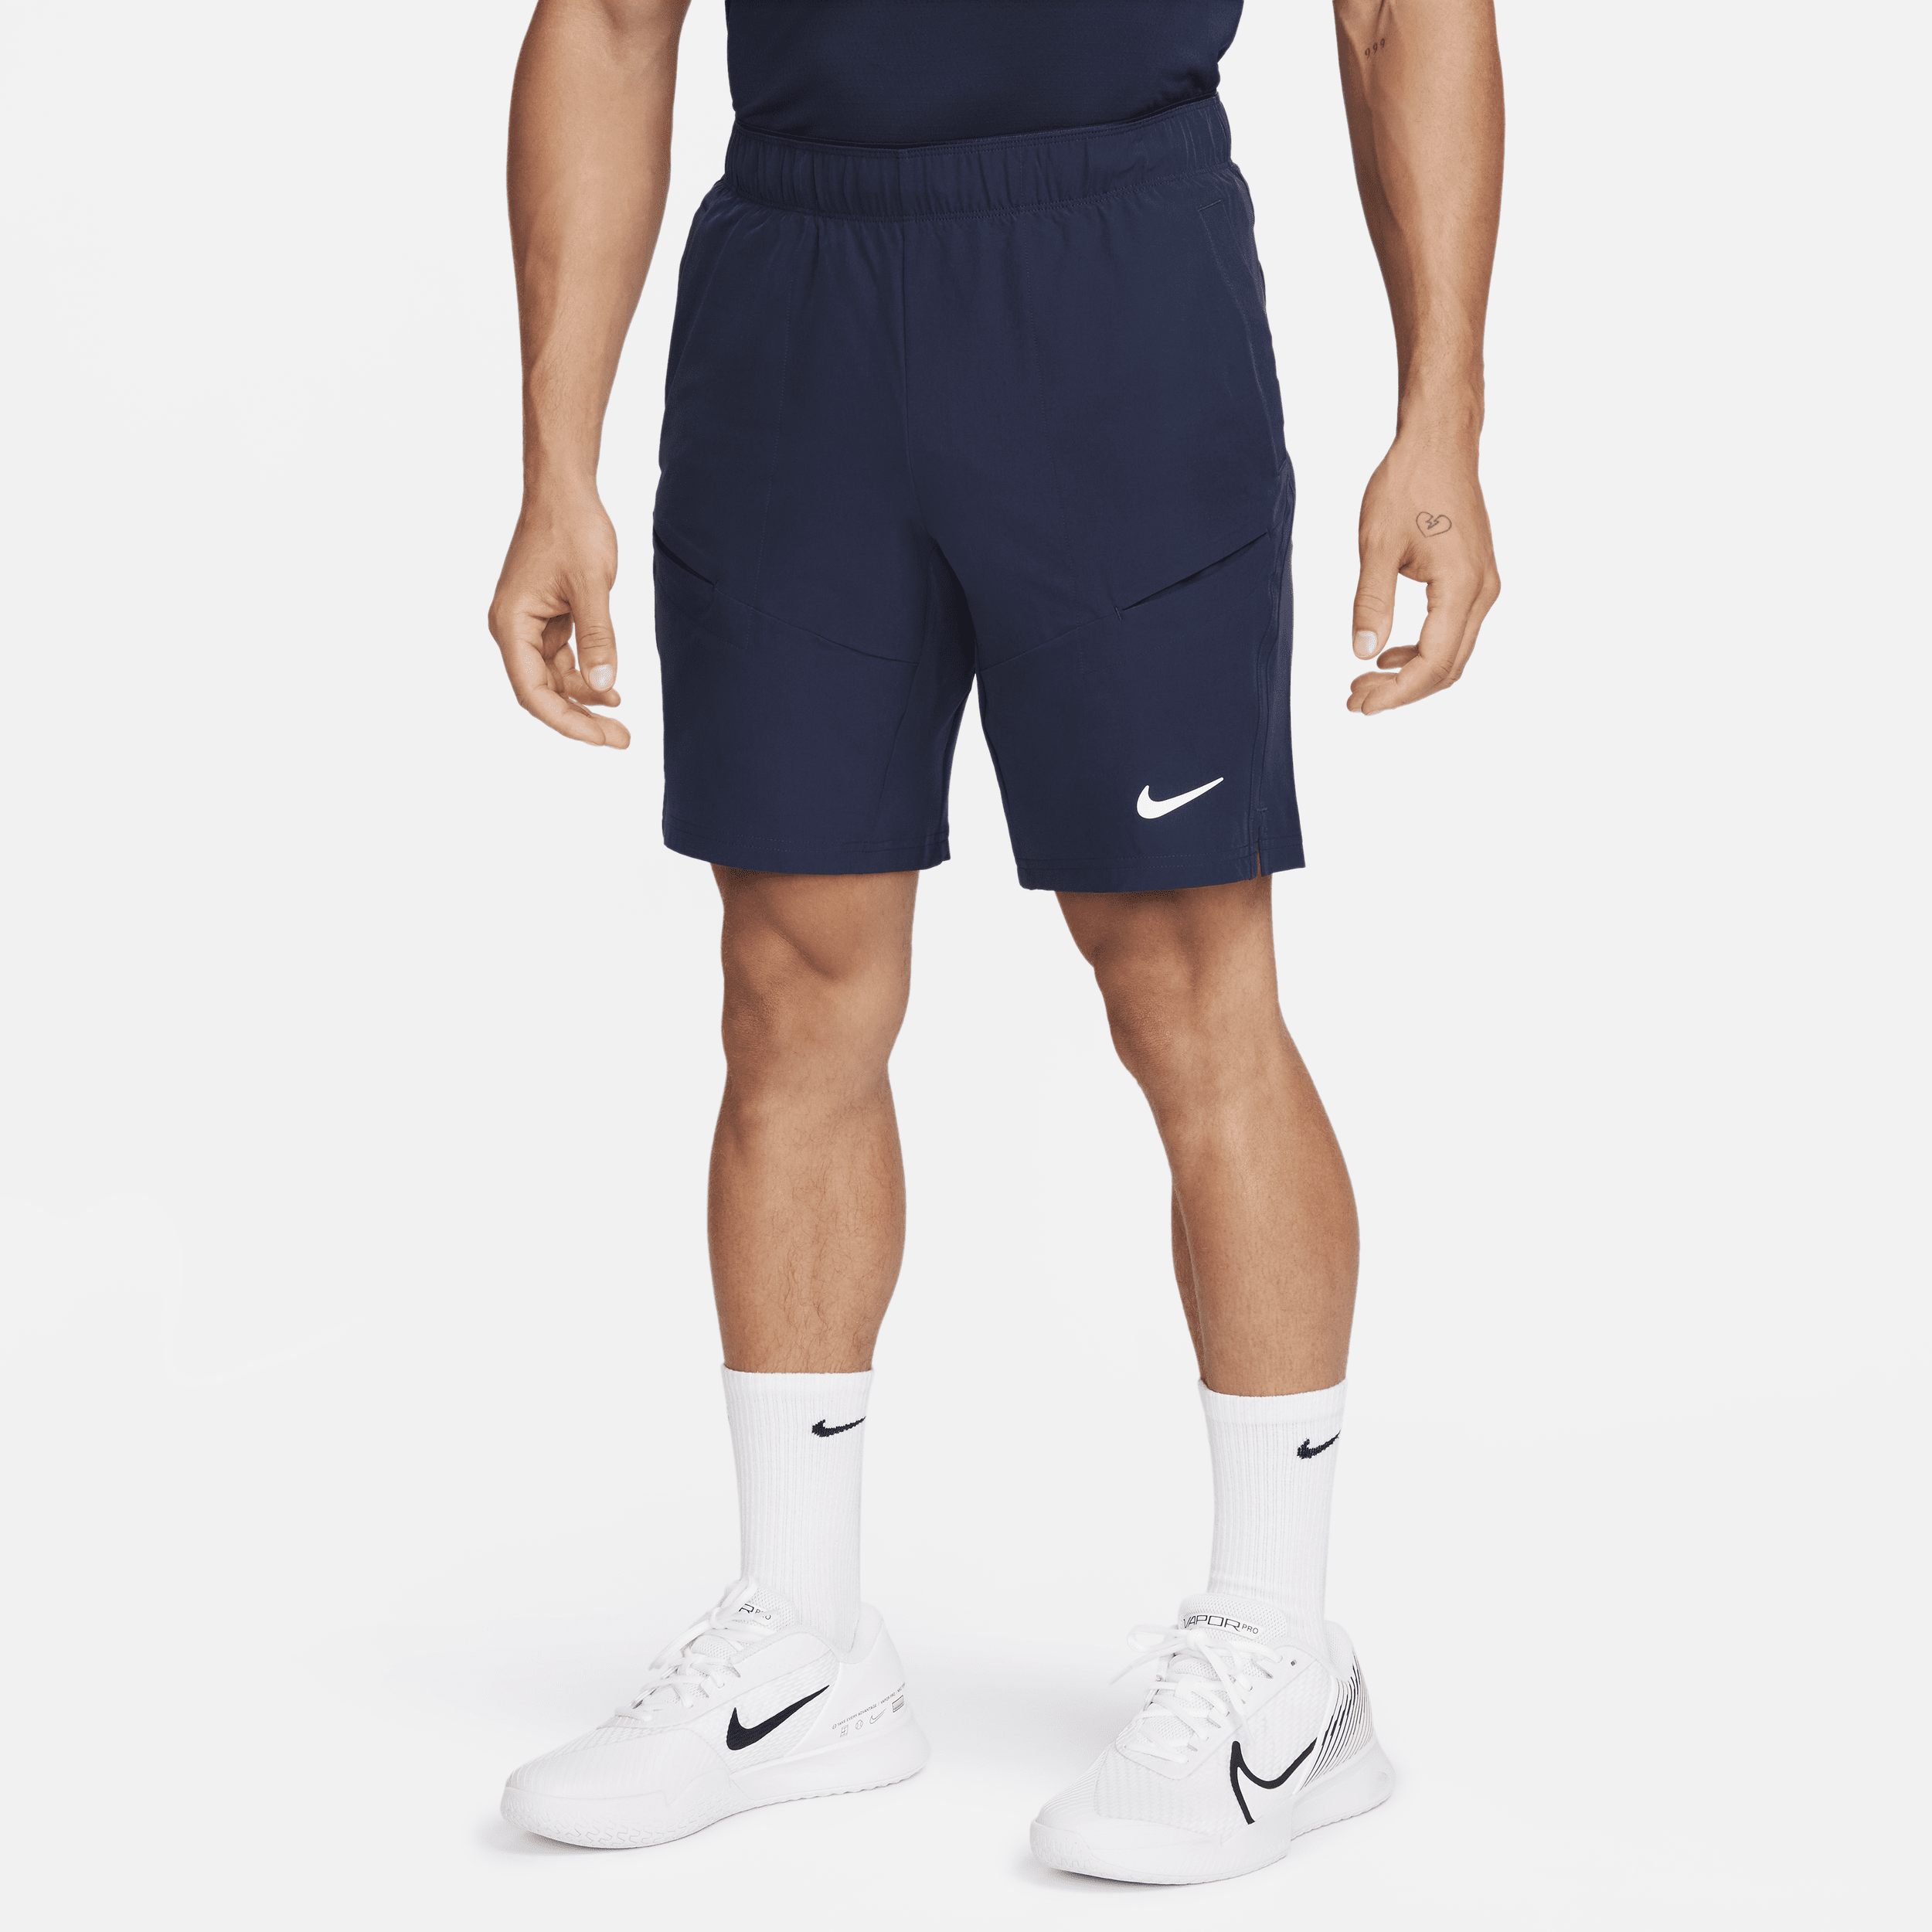 NikeCourt Advantage Pantalón corto de tenis de 23 cm - Hombre - Azul